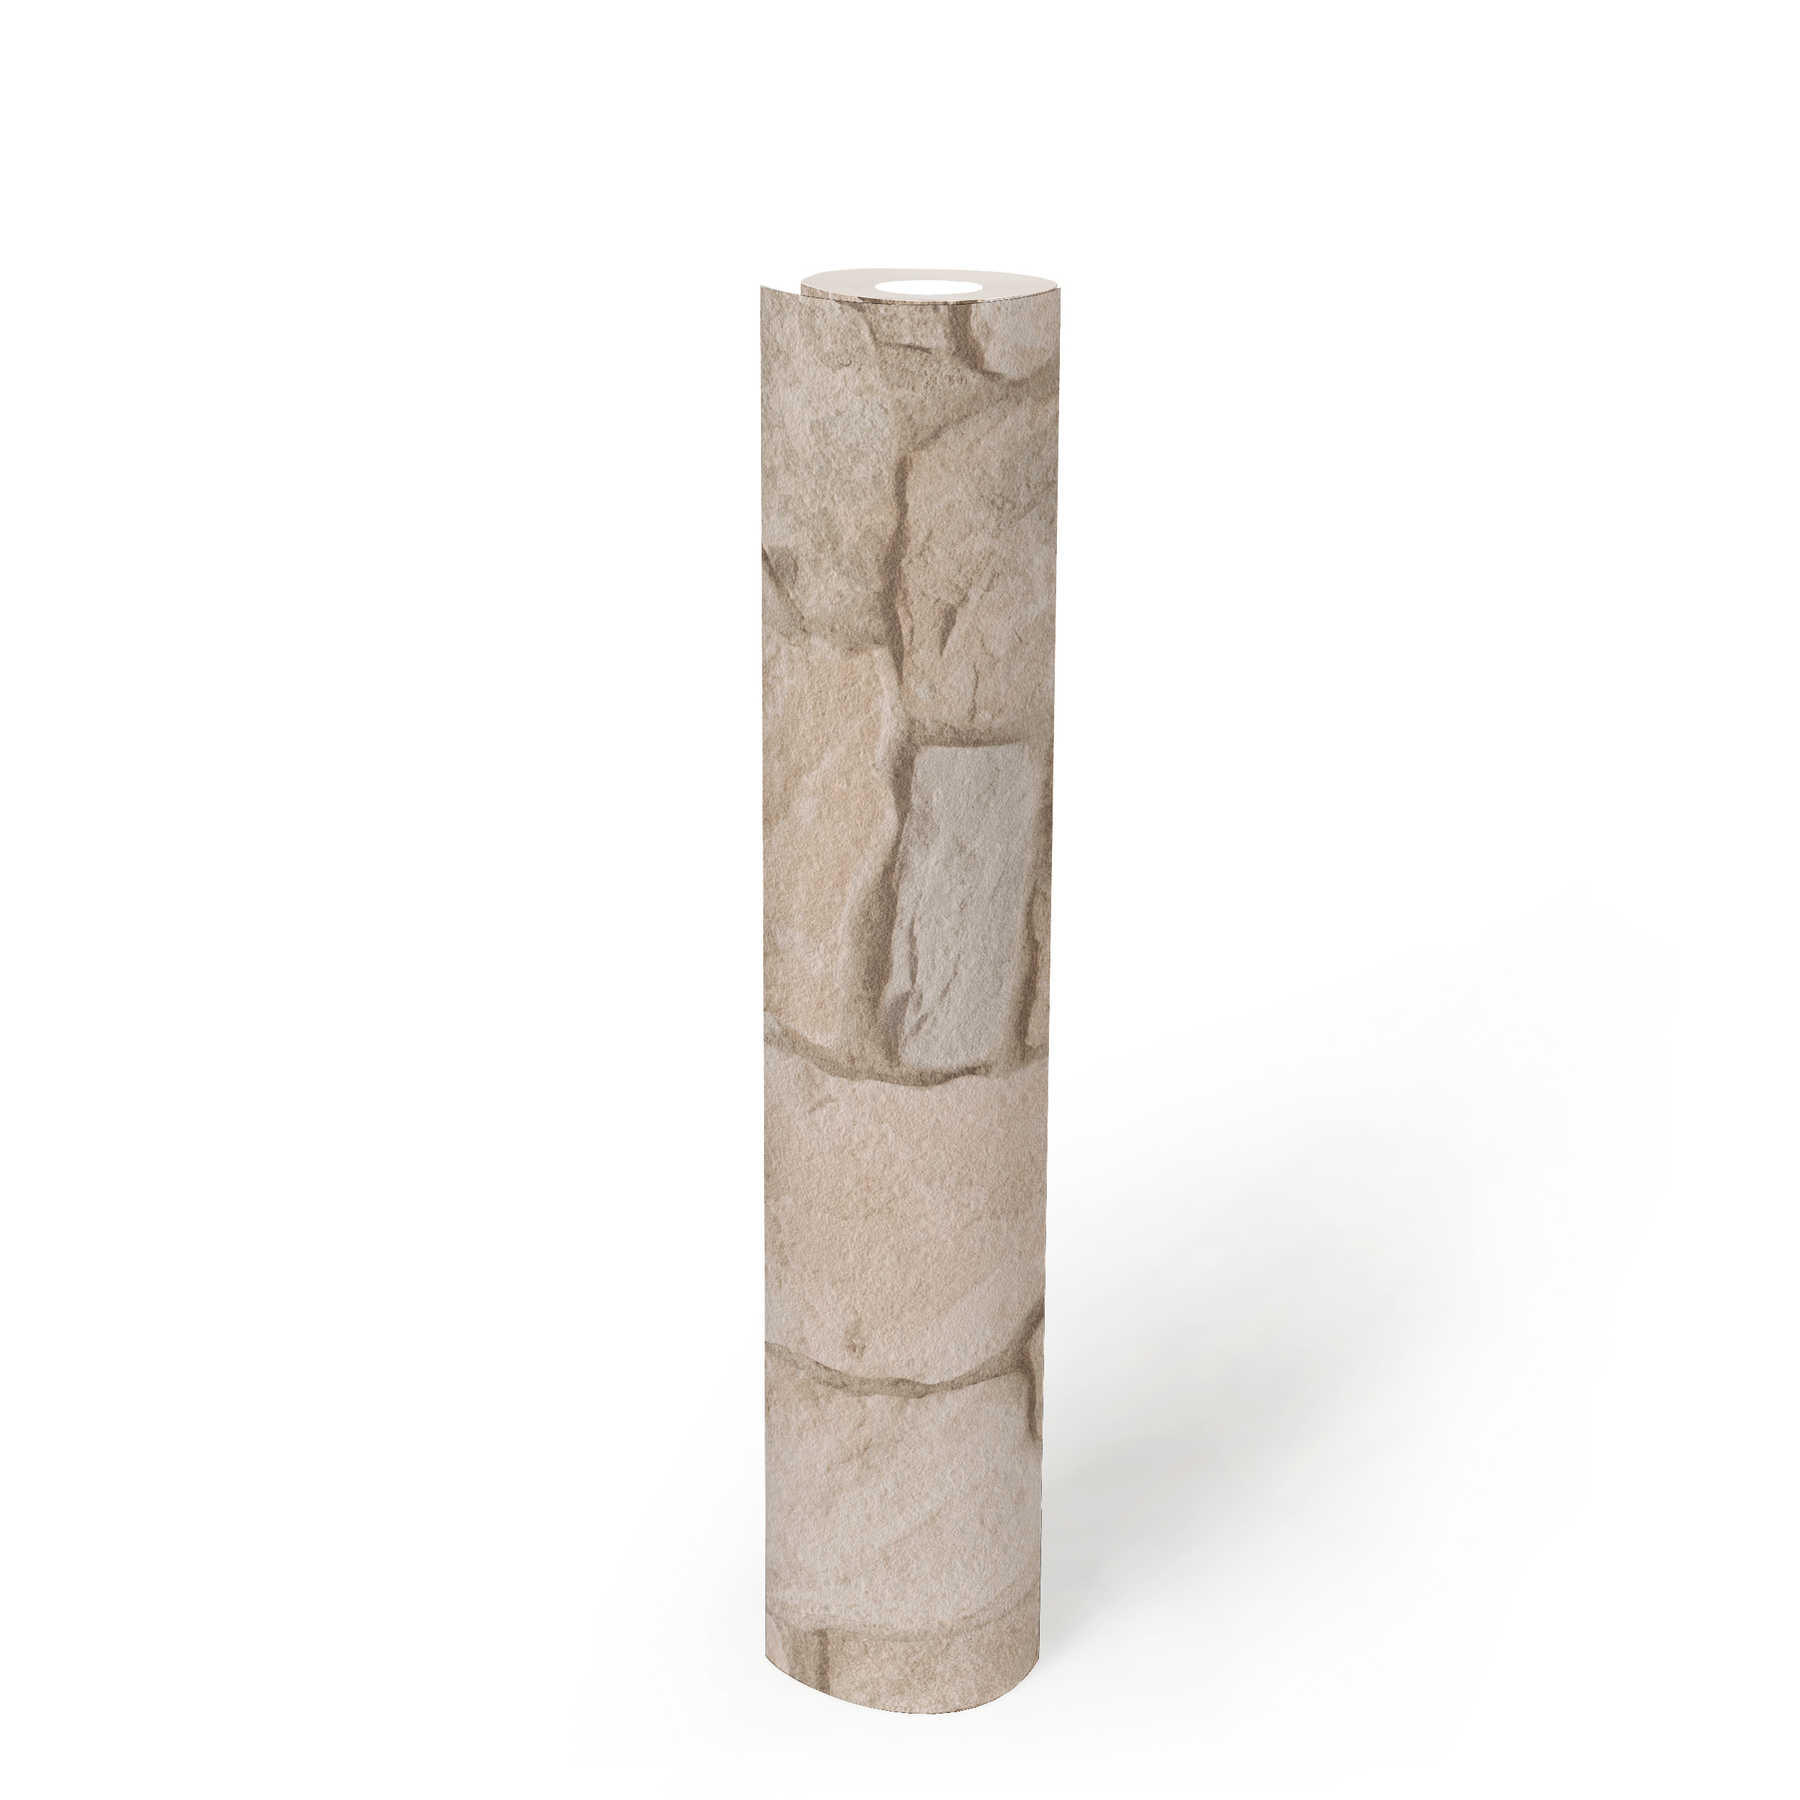             Carta da parati in pietra con effetto 3D e muratura in arenaria - Beige, Marrone
        